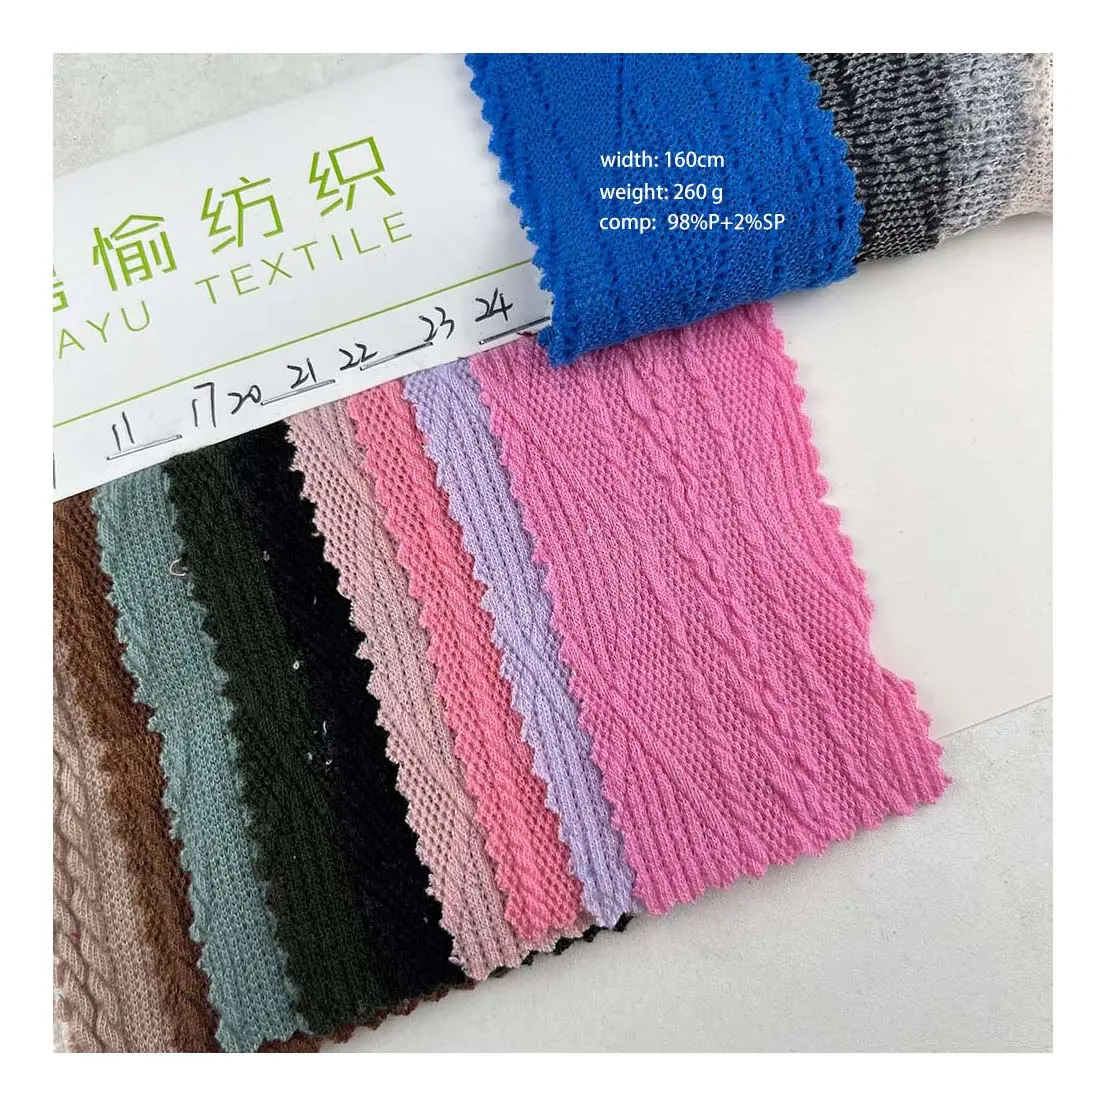 Tessuto di Design del cavo Jacquard lavorato a maglia 100% poliestere di alta qualità Premium che fa materiale maglione all'ingrosso